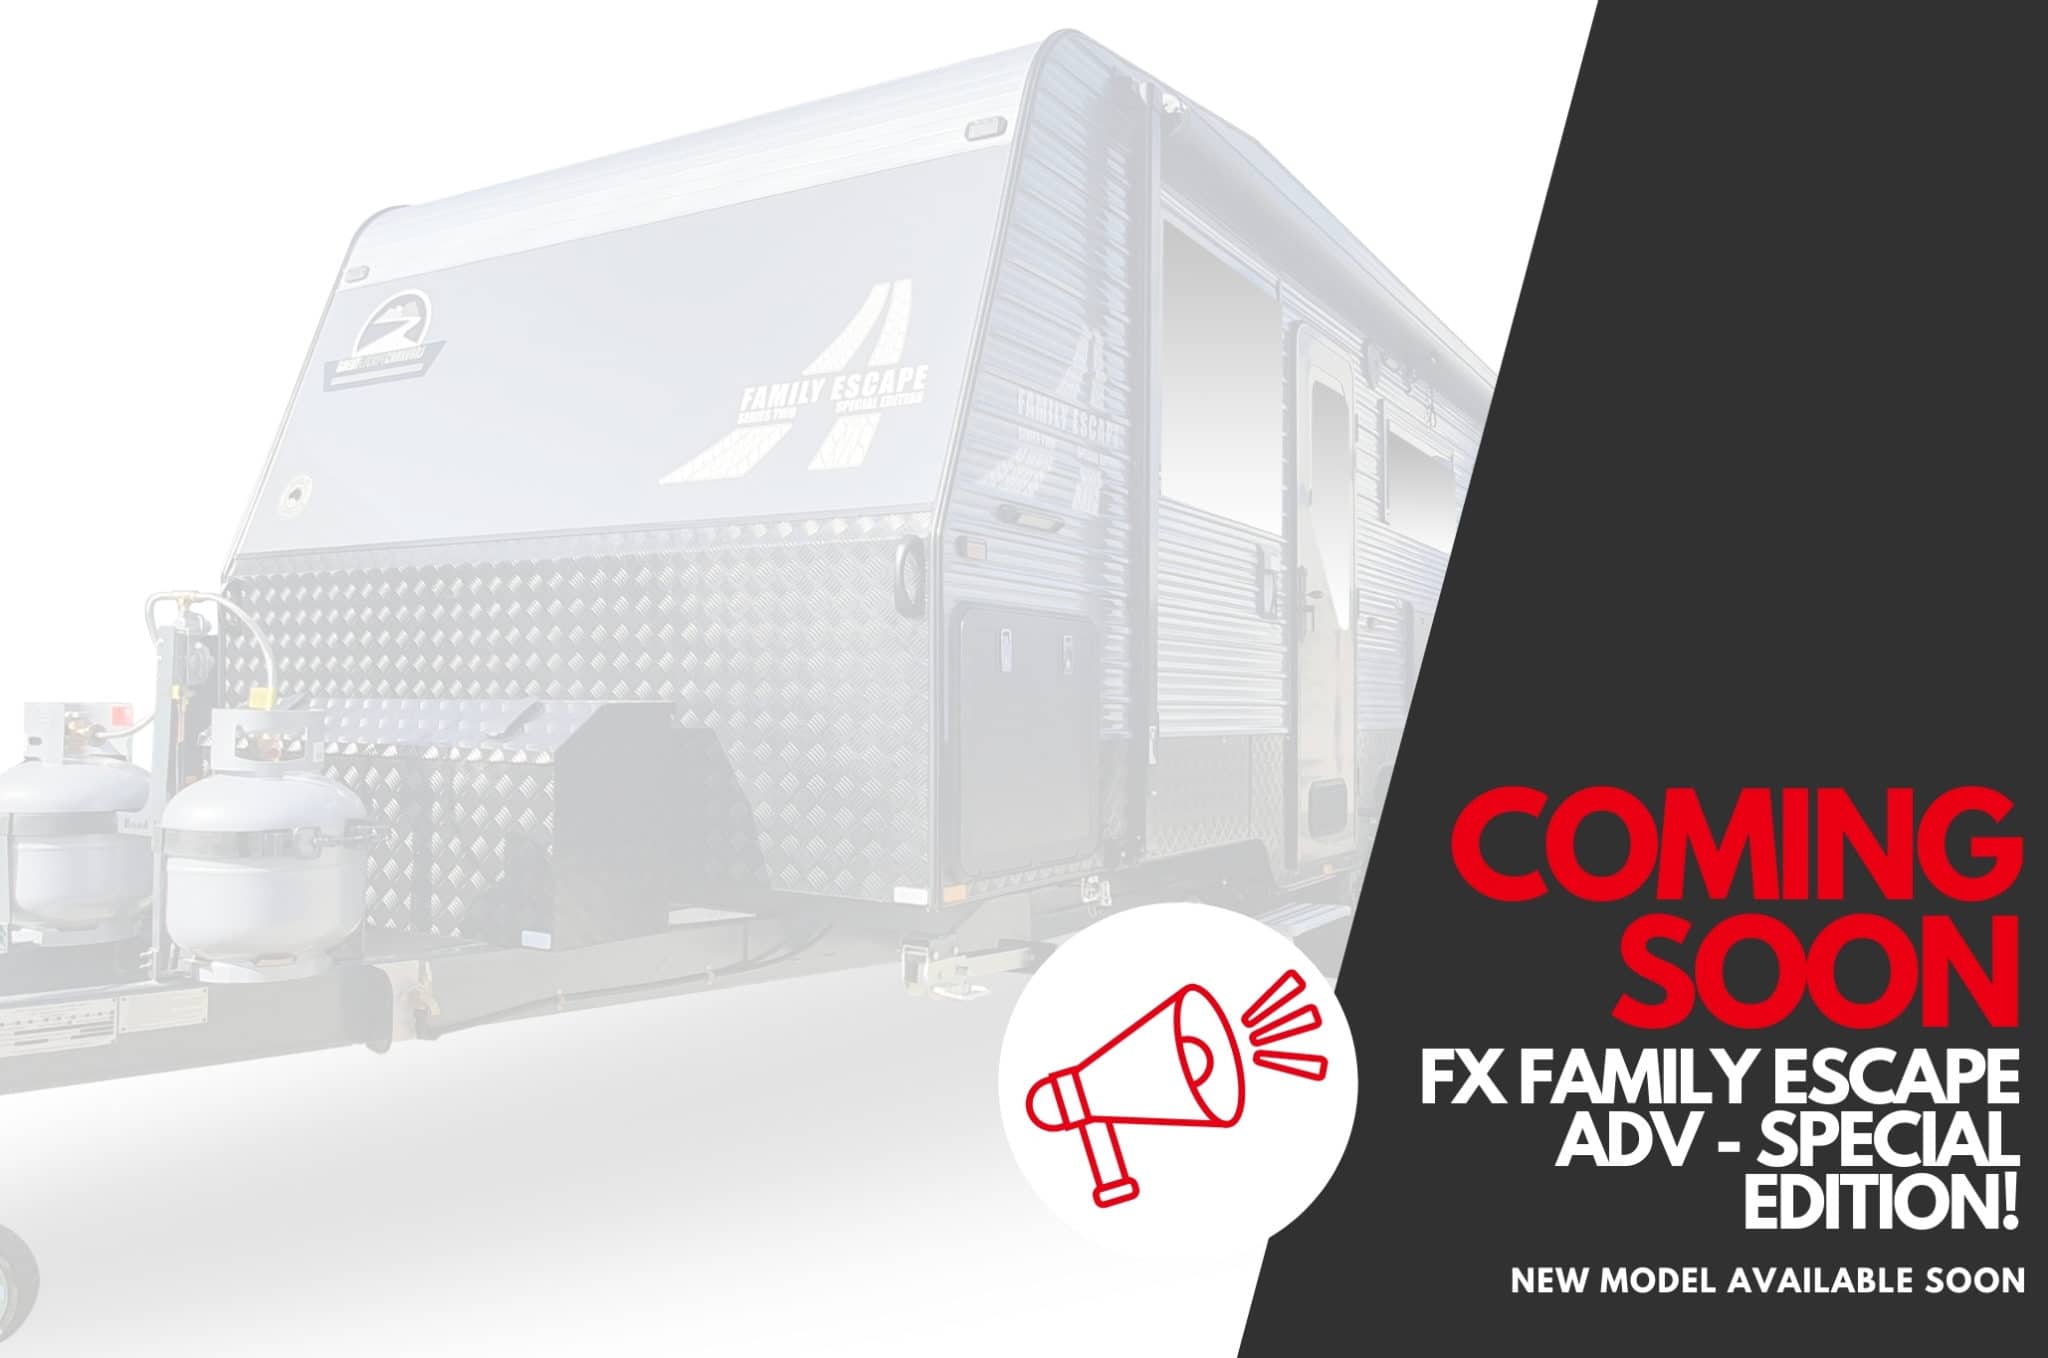 FX Family Escape ADV Special Edition